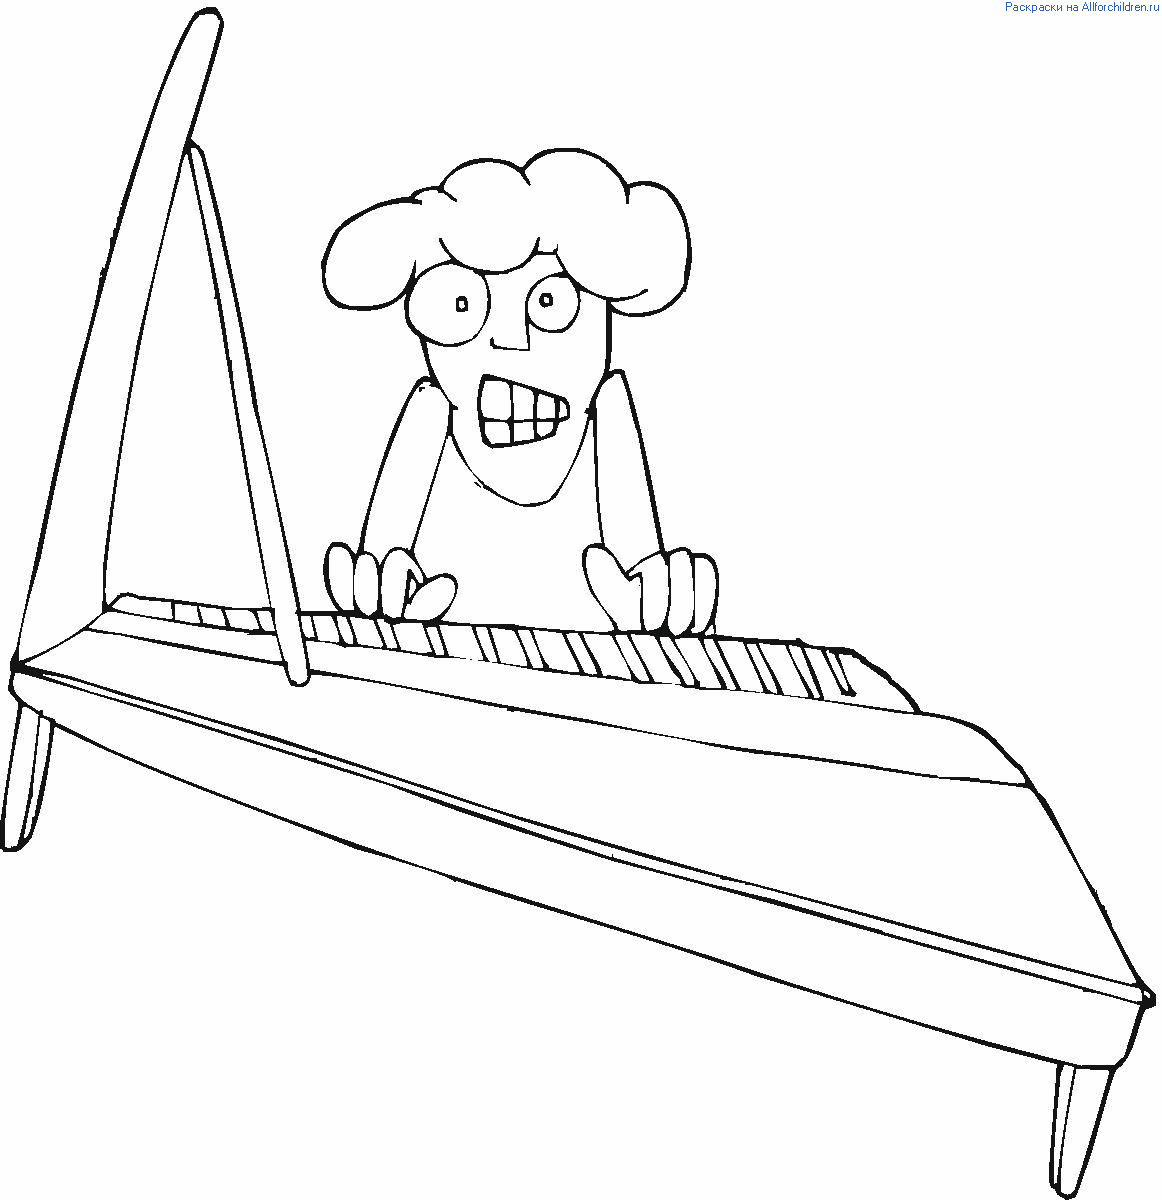 Водолаз играющий на пианино